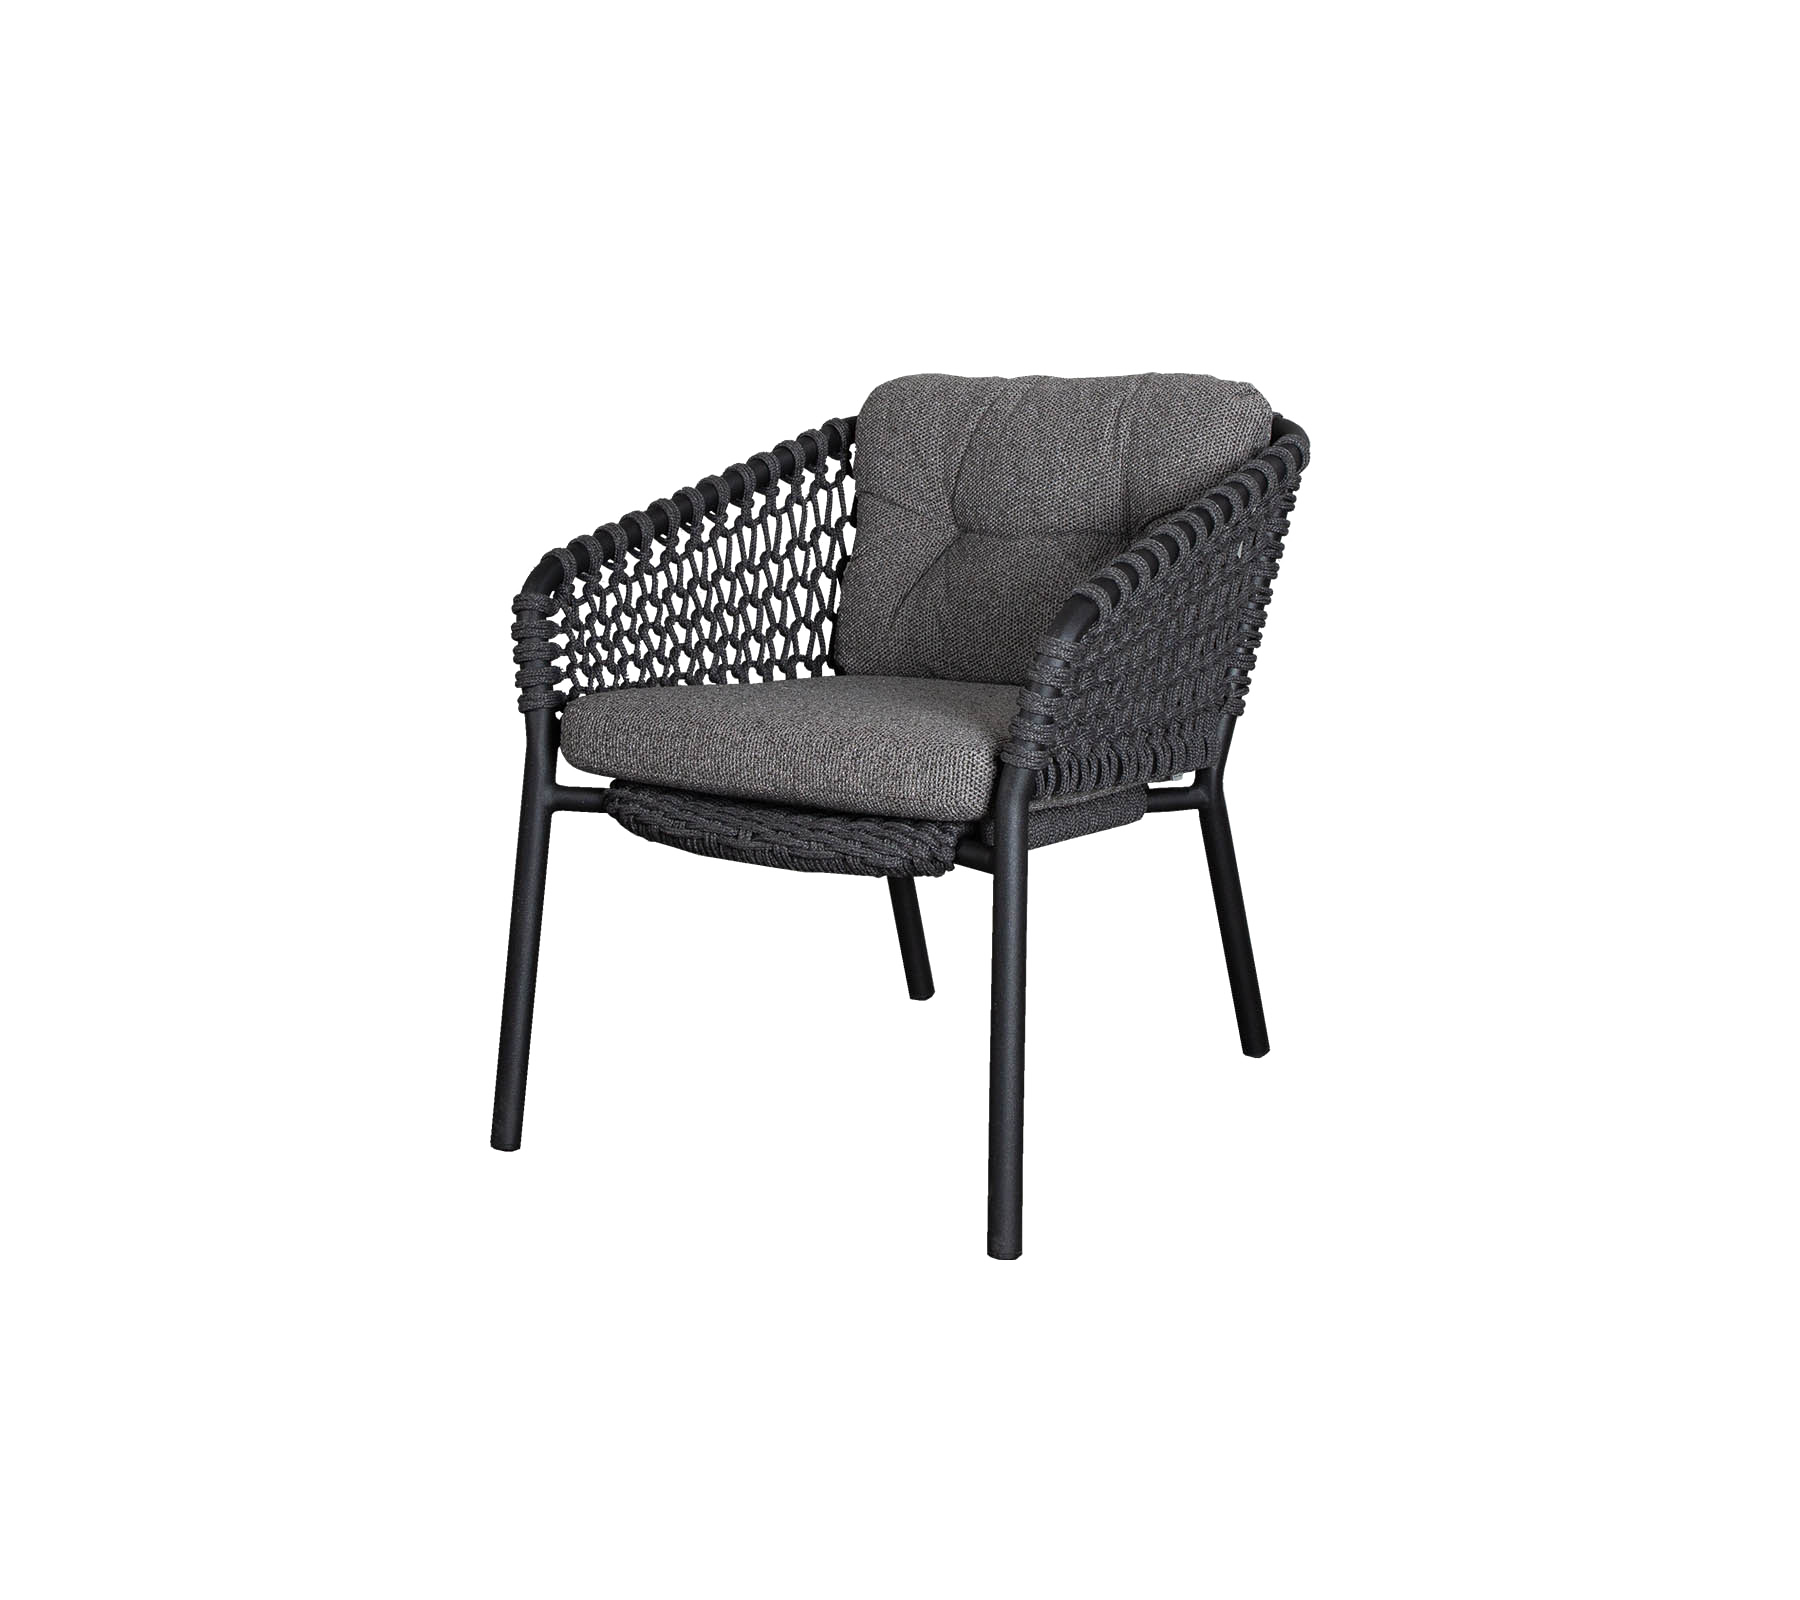 Cushion set, Ocean lounge chair